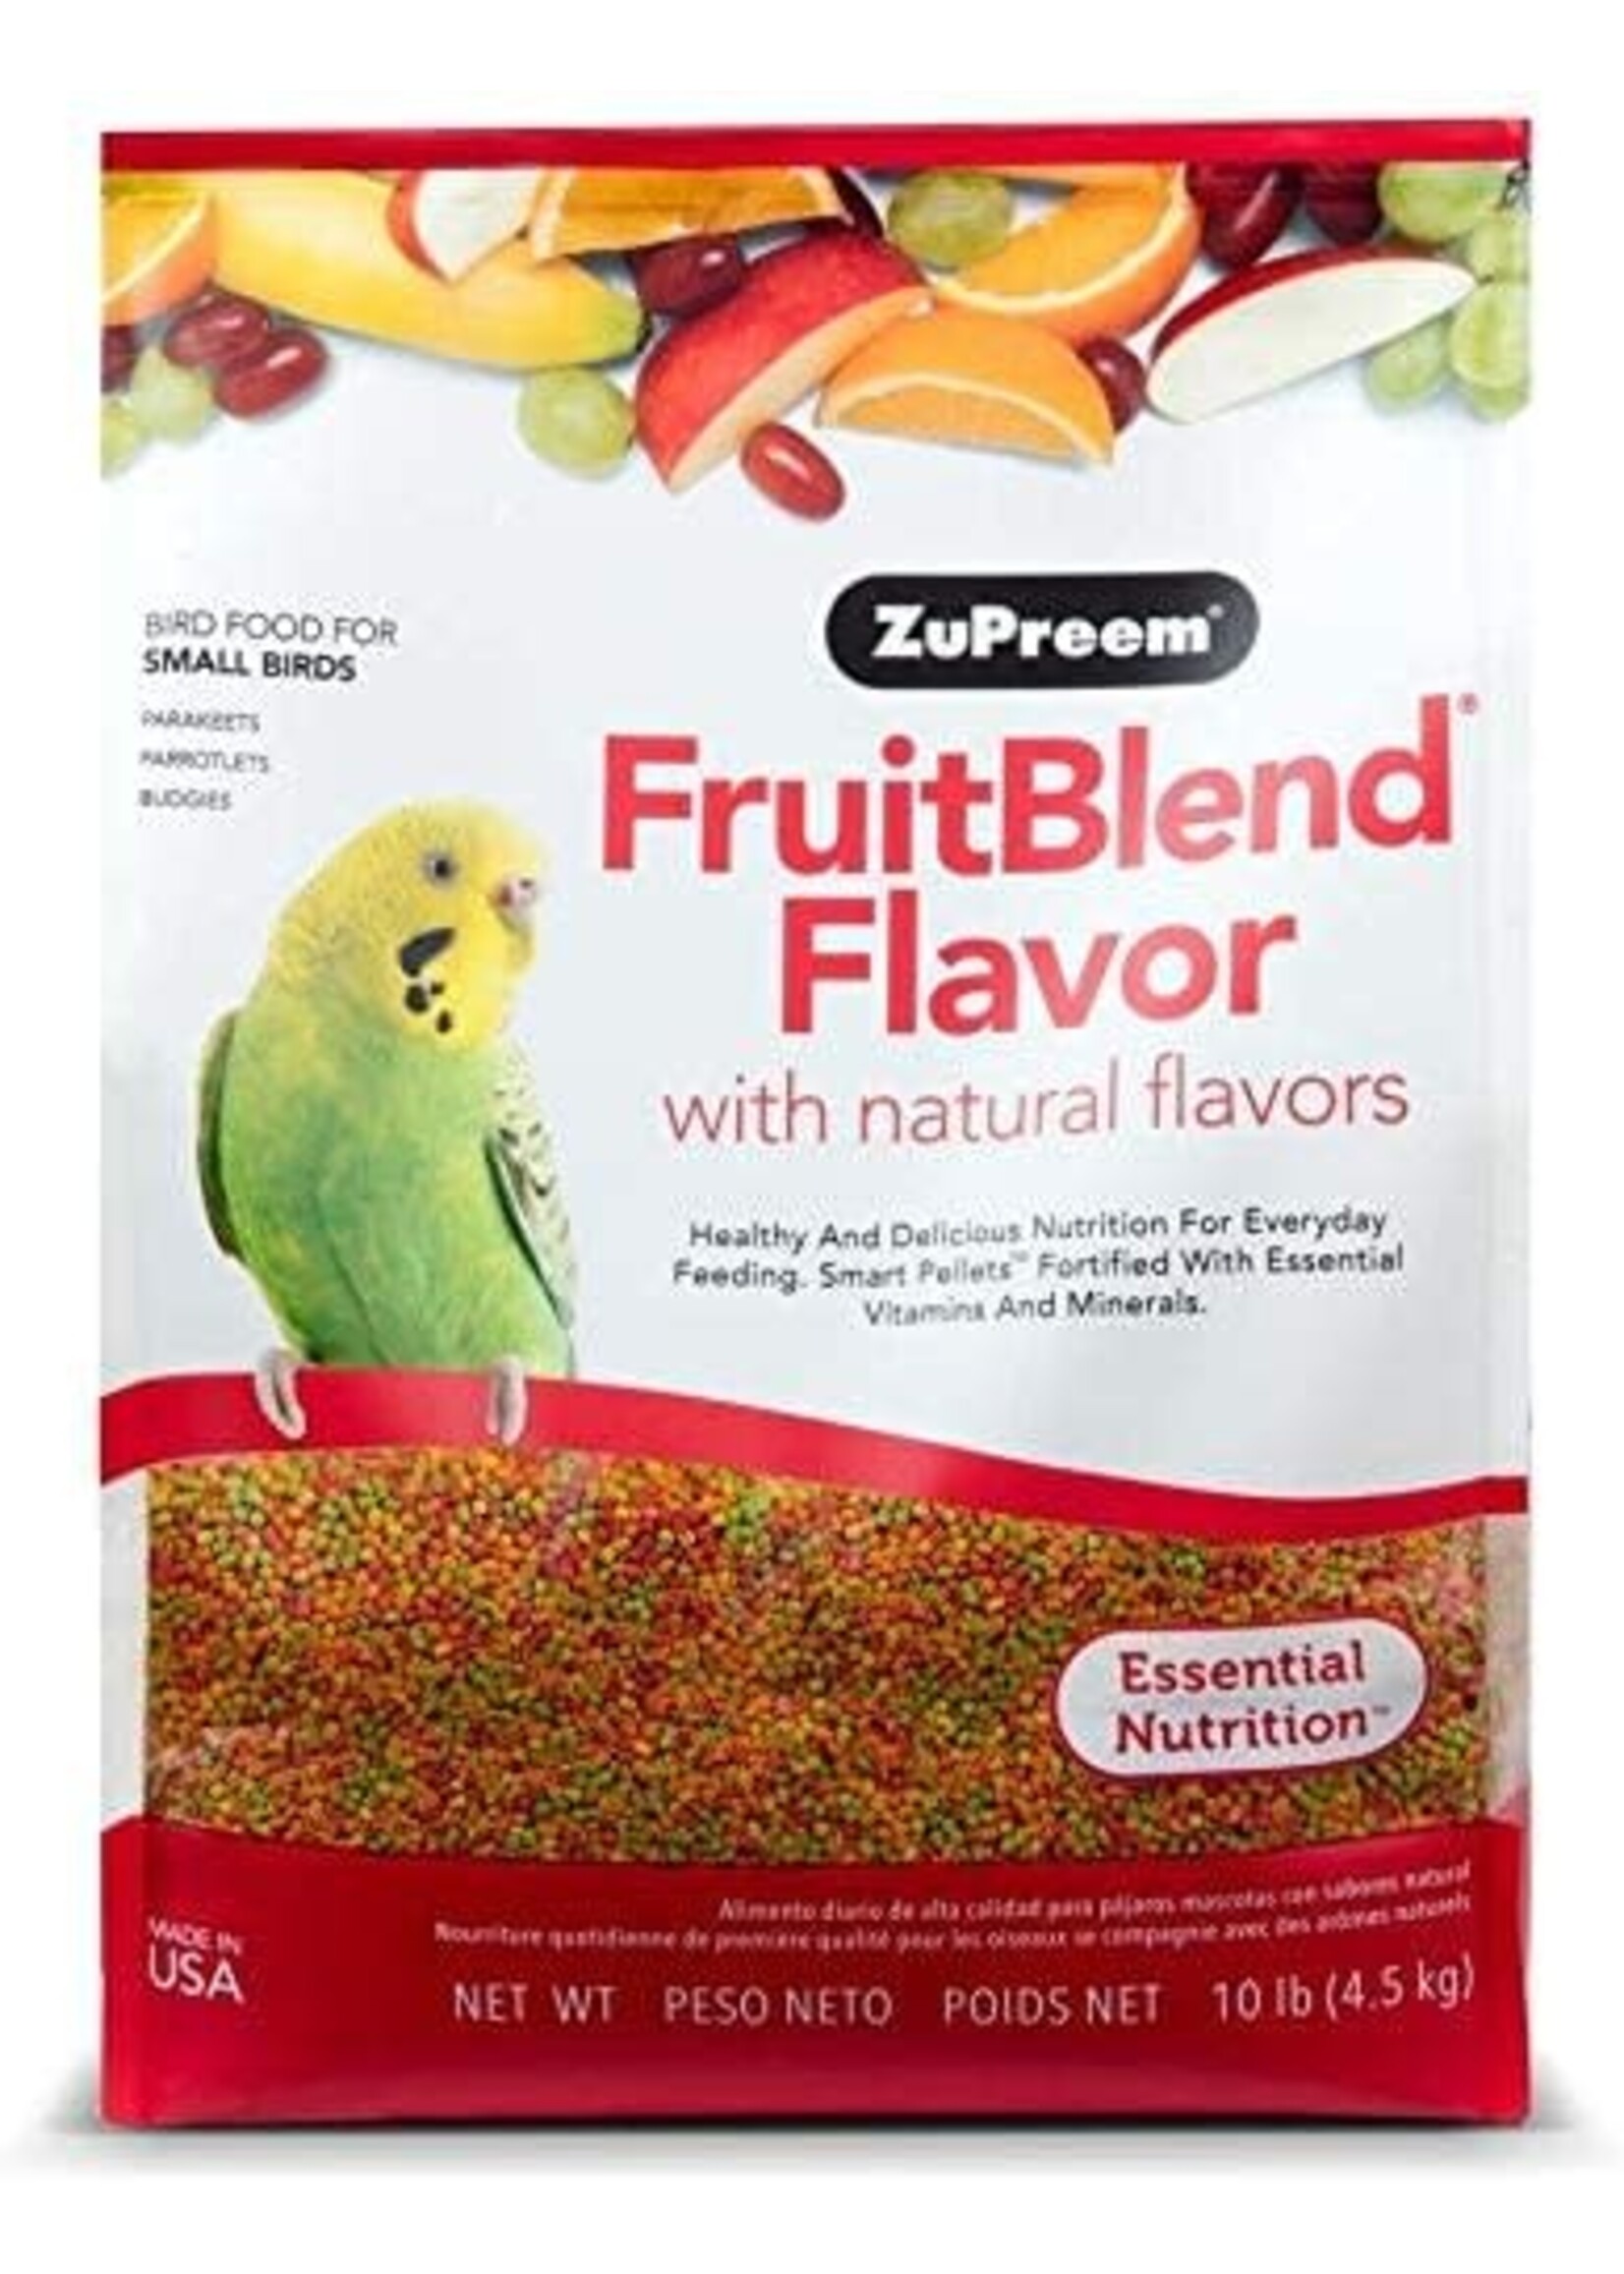 Zupreem ZuPreem "Fruitblend" Food For Parakeet, Budgies, Parrotlet & Small Birds 10lbs 81100